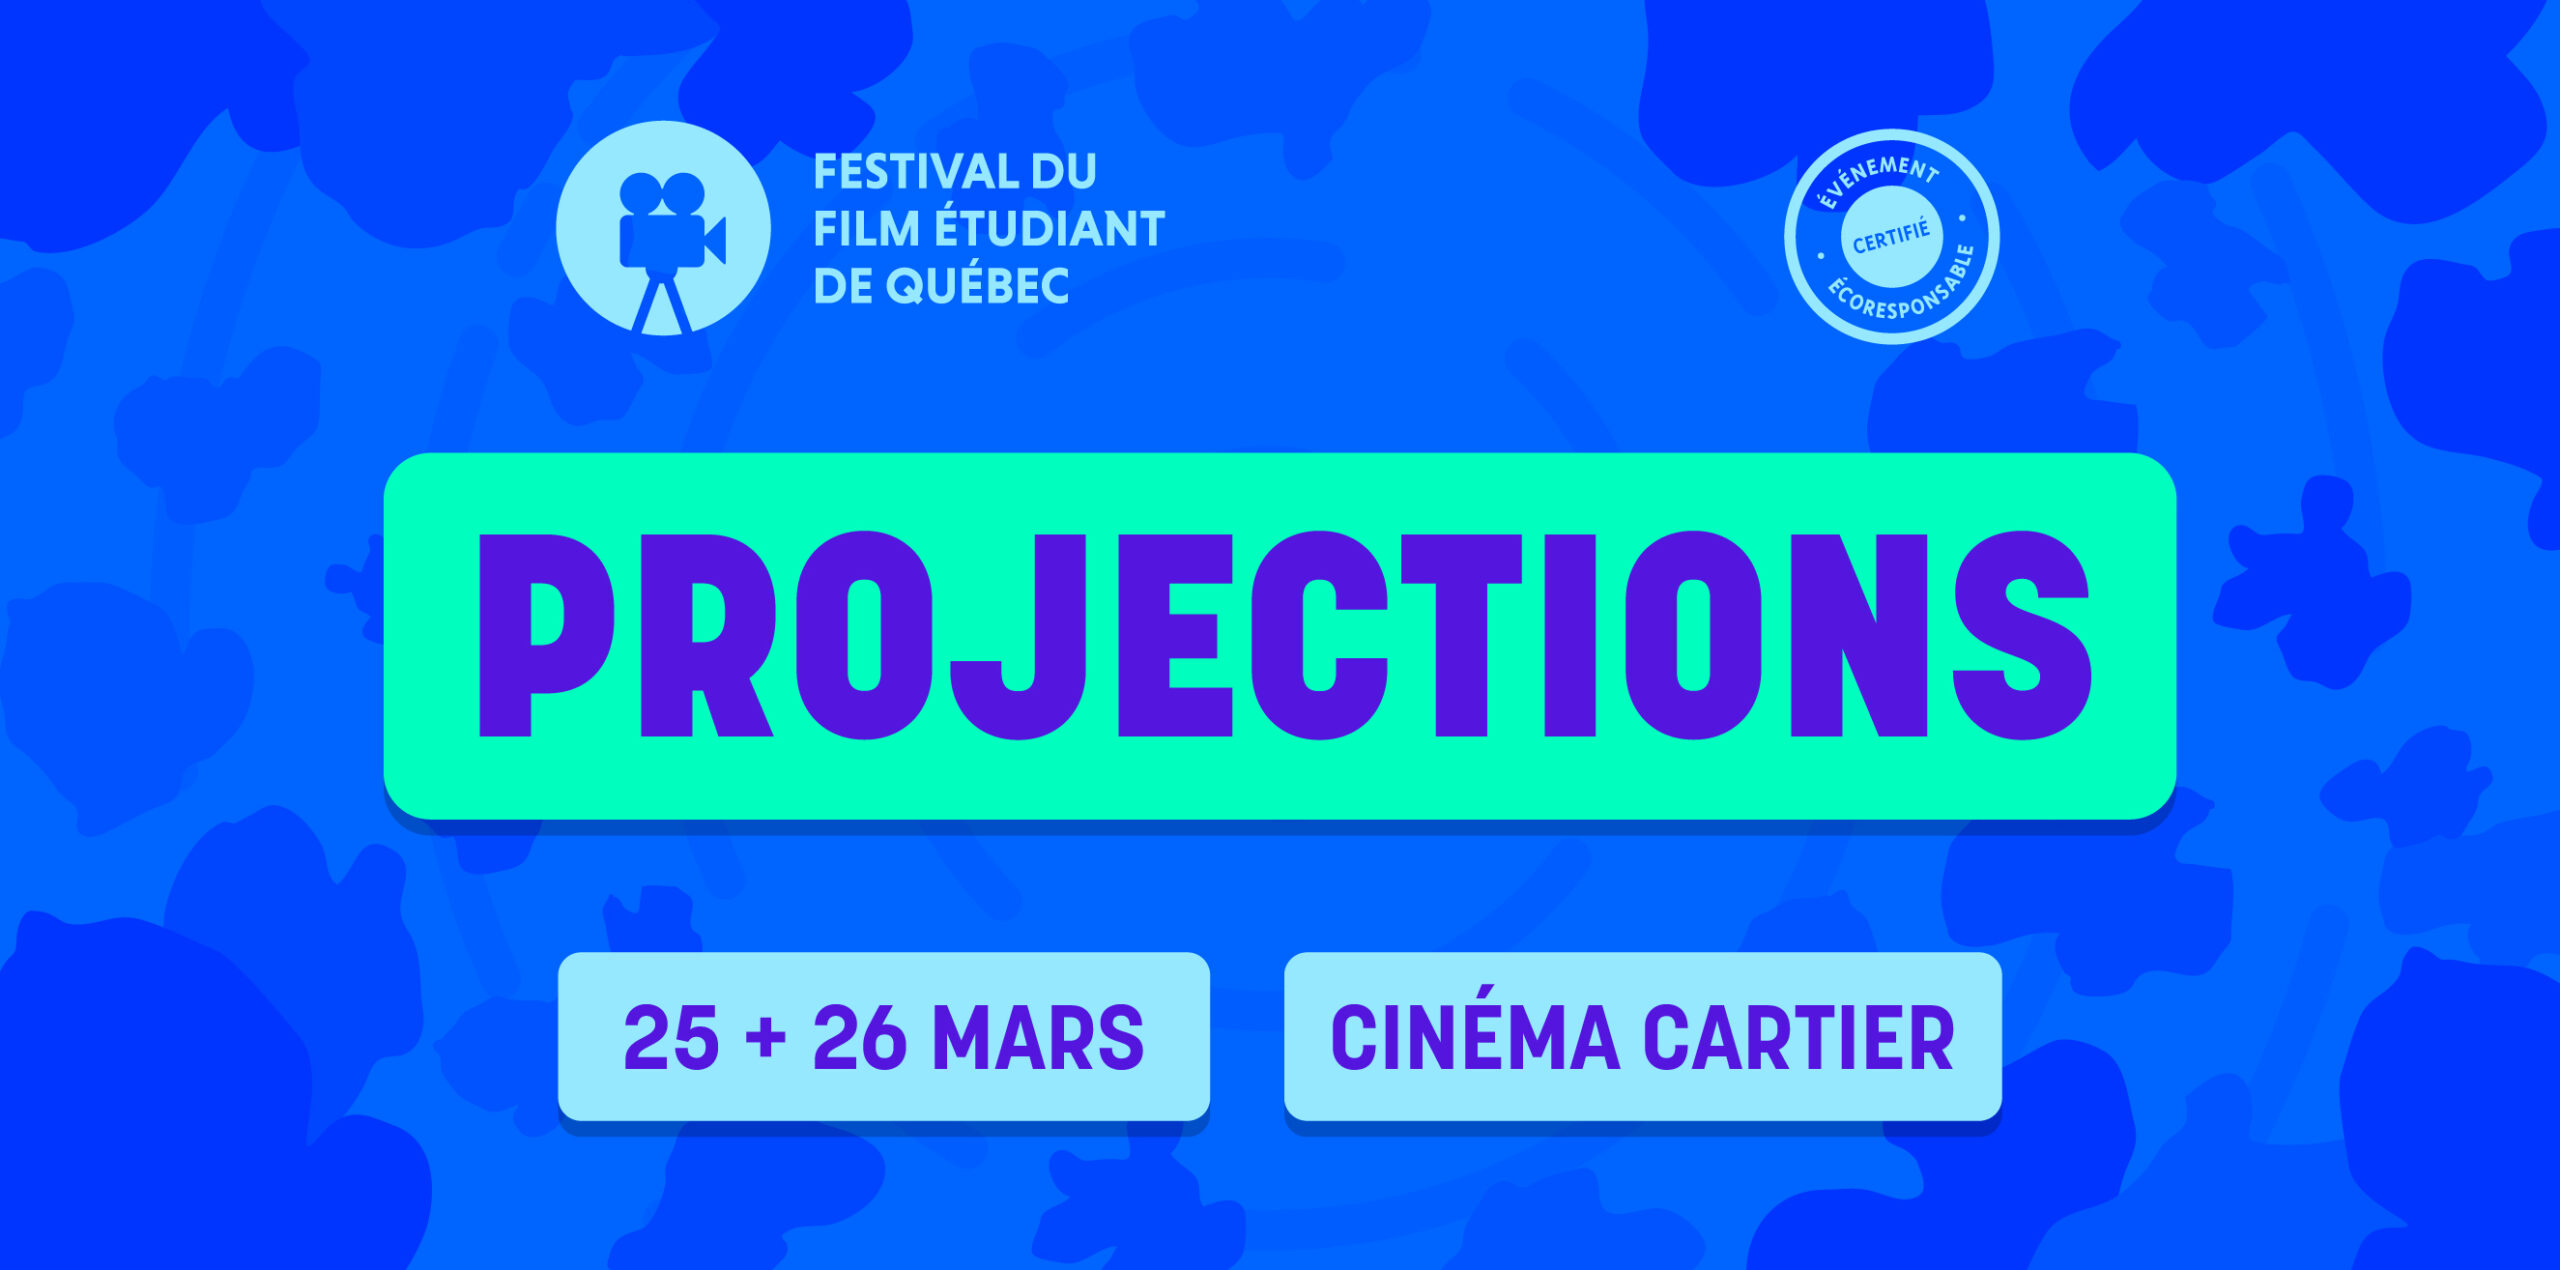 Festival du Film Étudiant de Québec